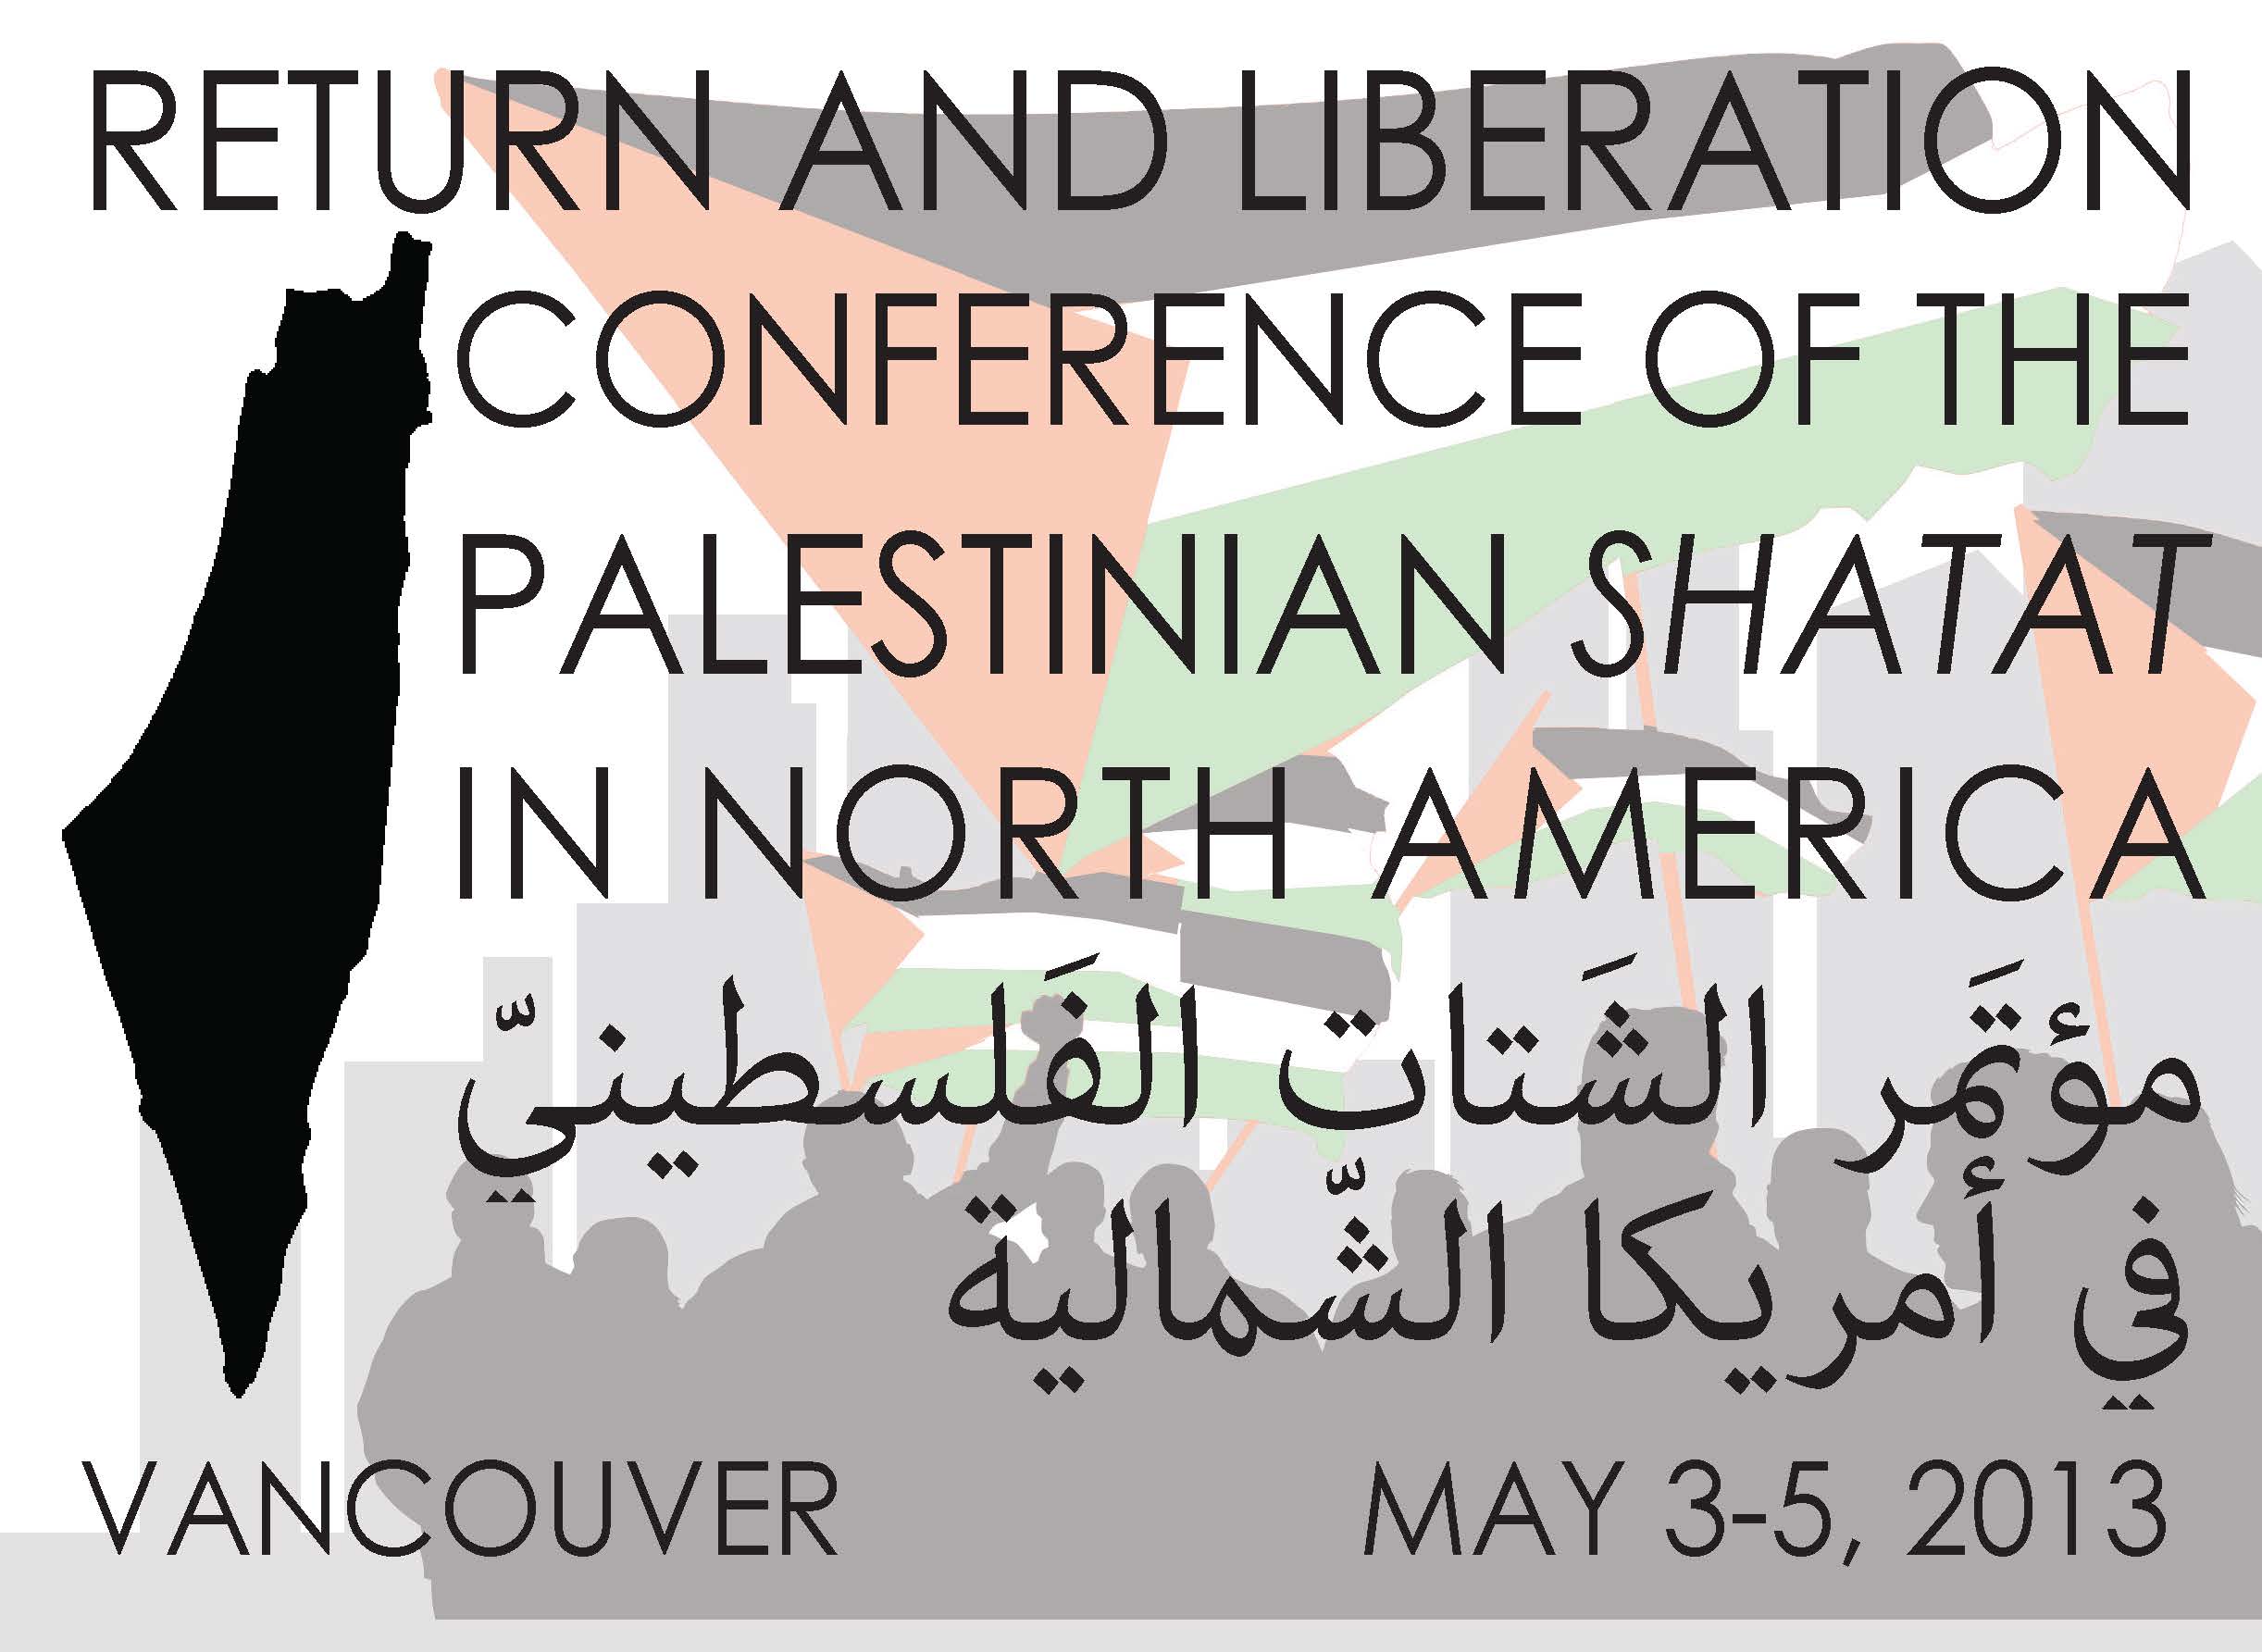 تحت شعار ” طريقنا العودة و التحرير ” مُؤتمر للشتات الفلسطيني في أمريكا الشمالية في مايو / أيار القادم